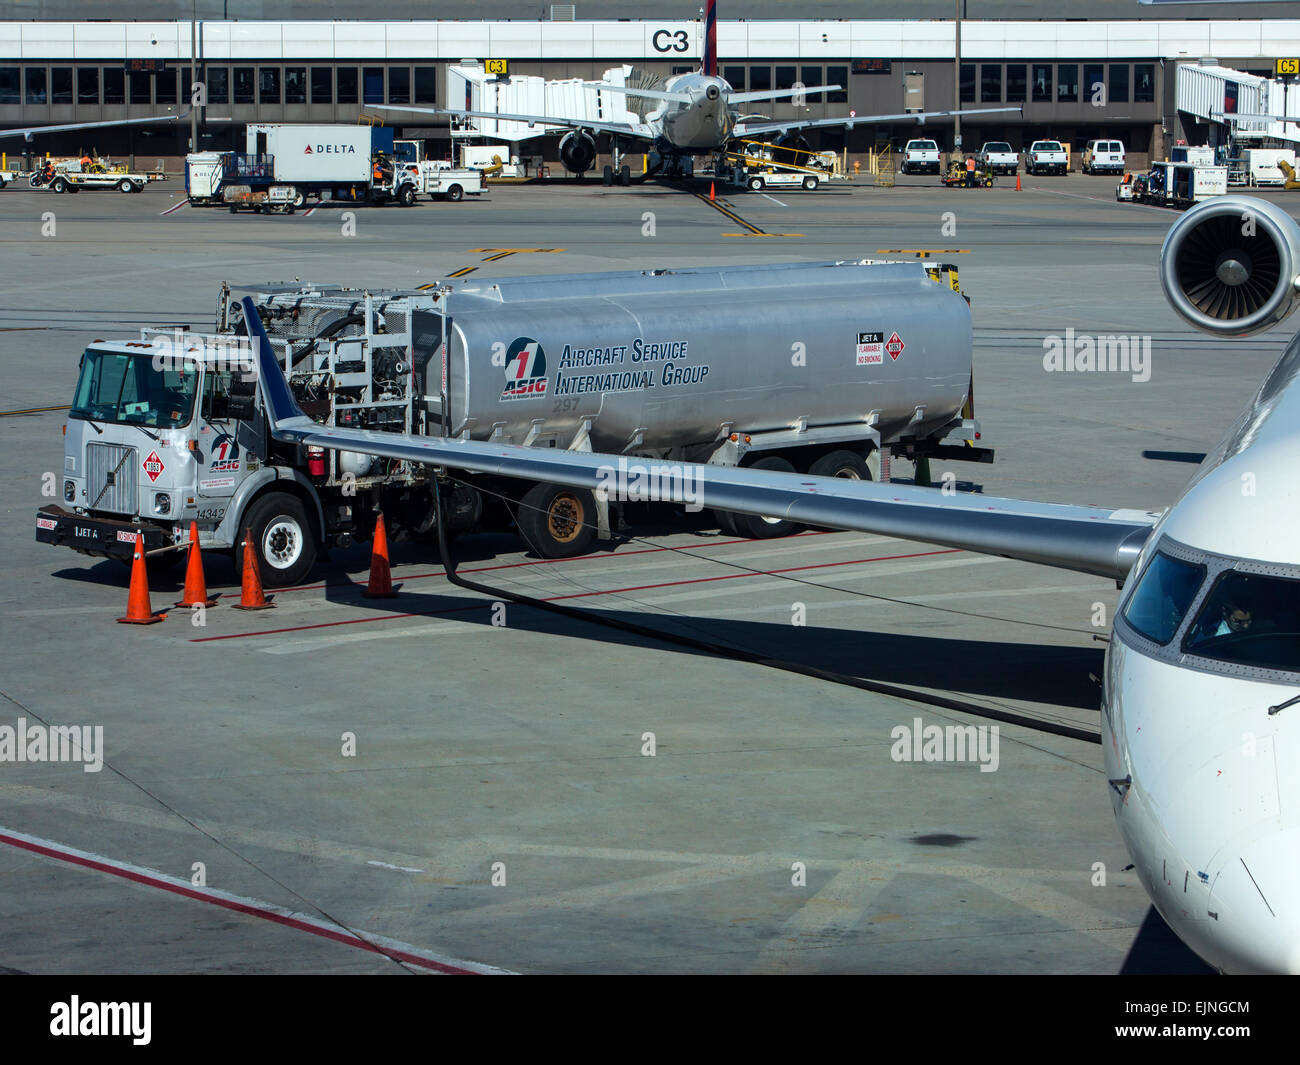 Salt Lake City, Utah, camión de repostaje de aviones del aeropuerto Foto de stock